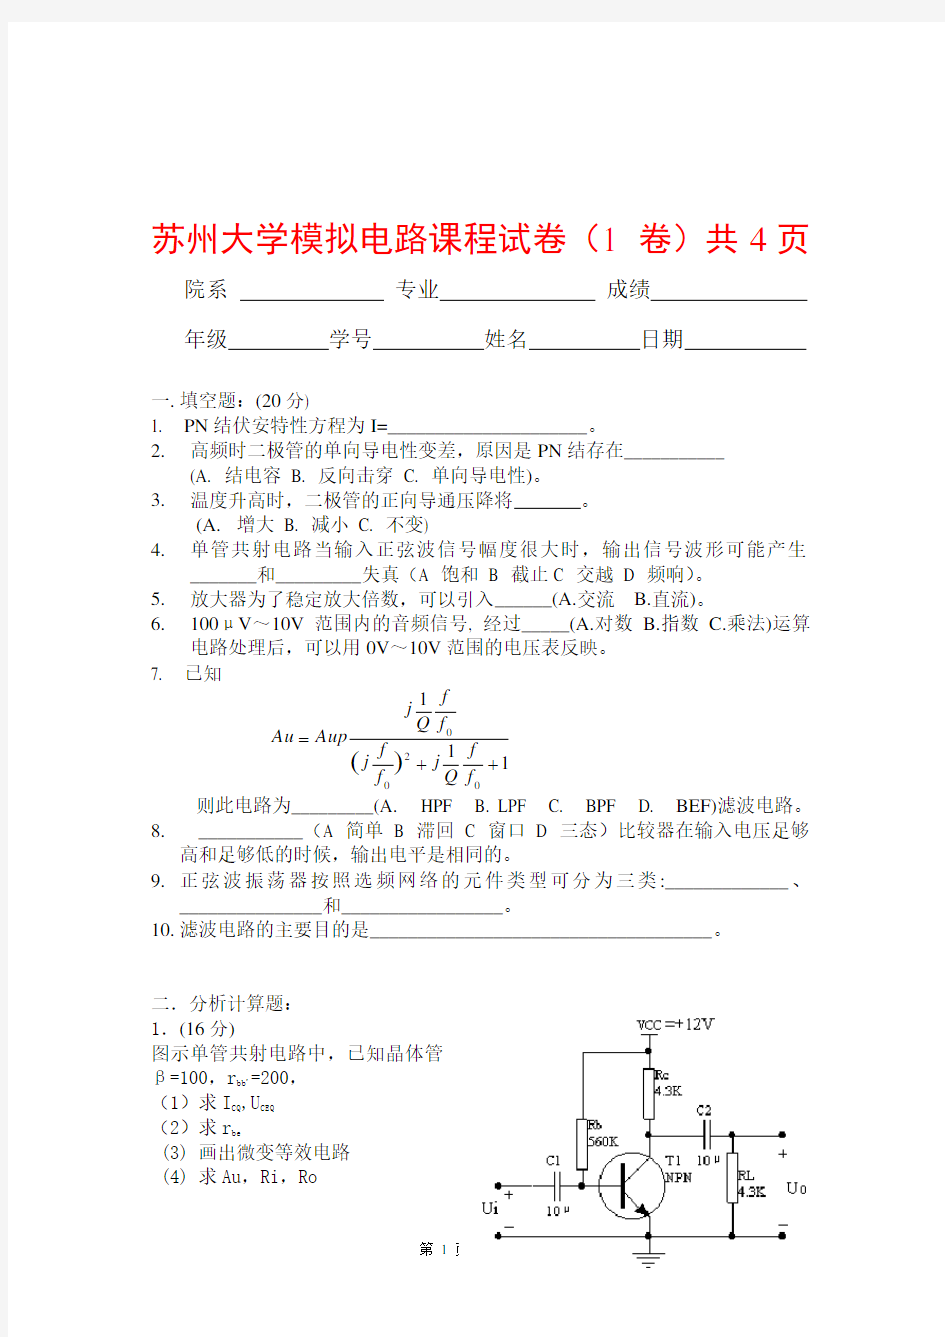 杭州电子科技大学电子信息学院-杭州电子科技大学学生考试卷-模拟电路试卷(总集)